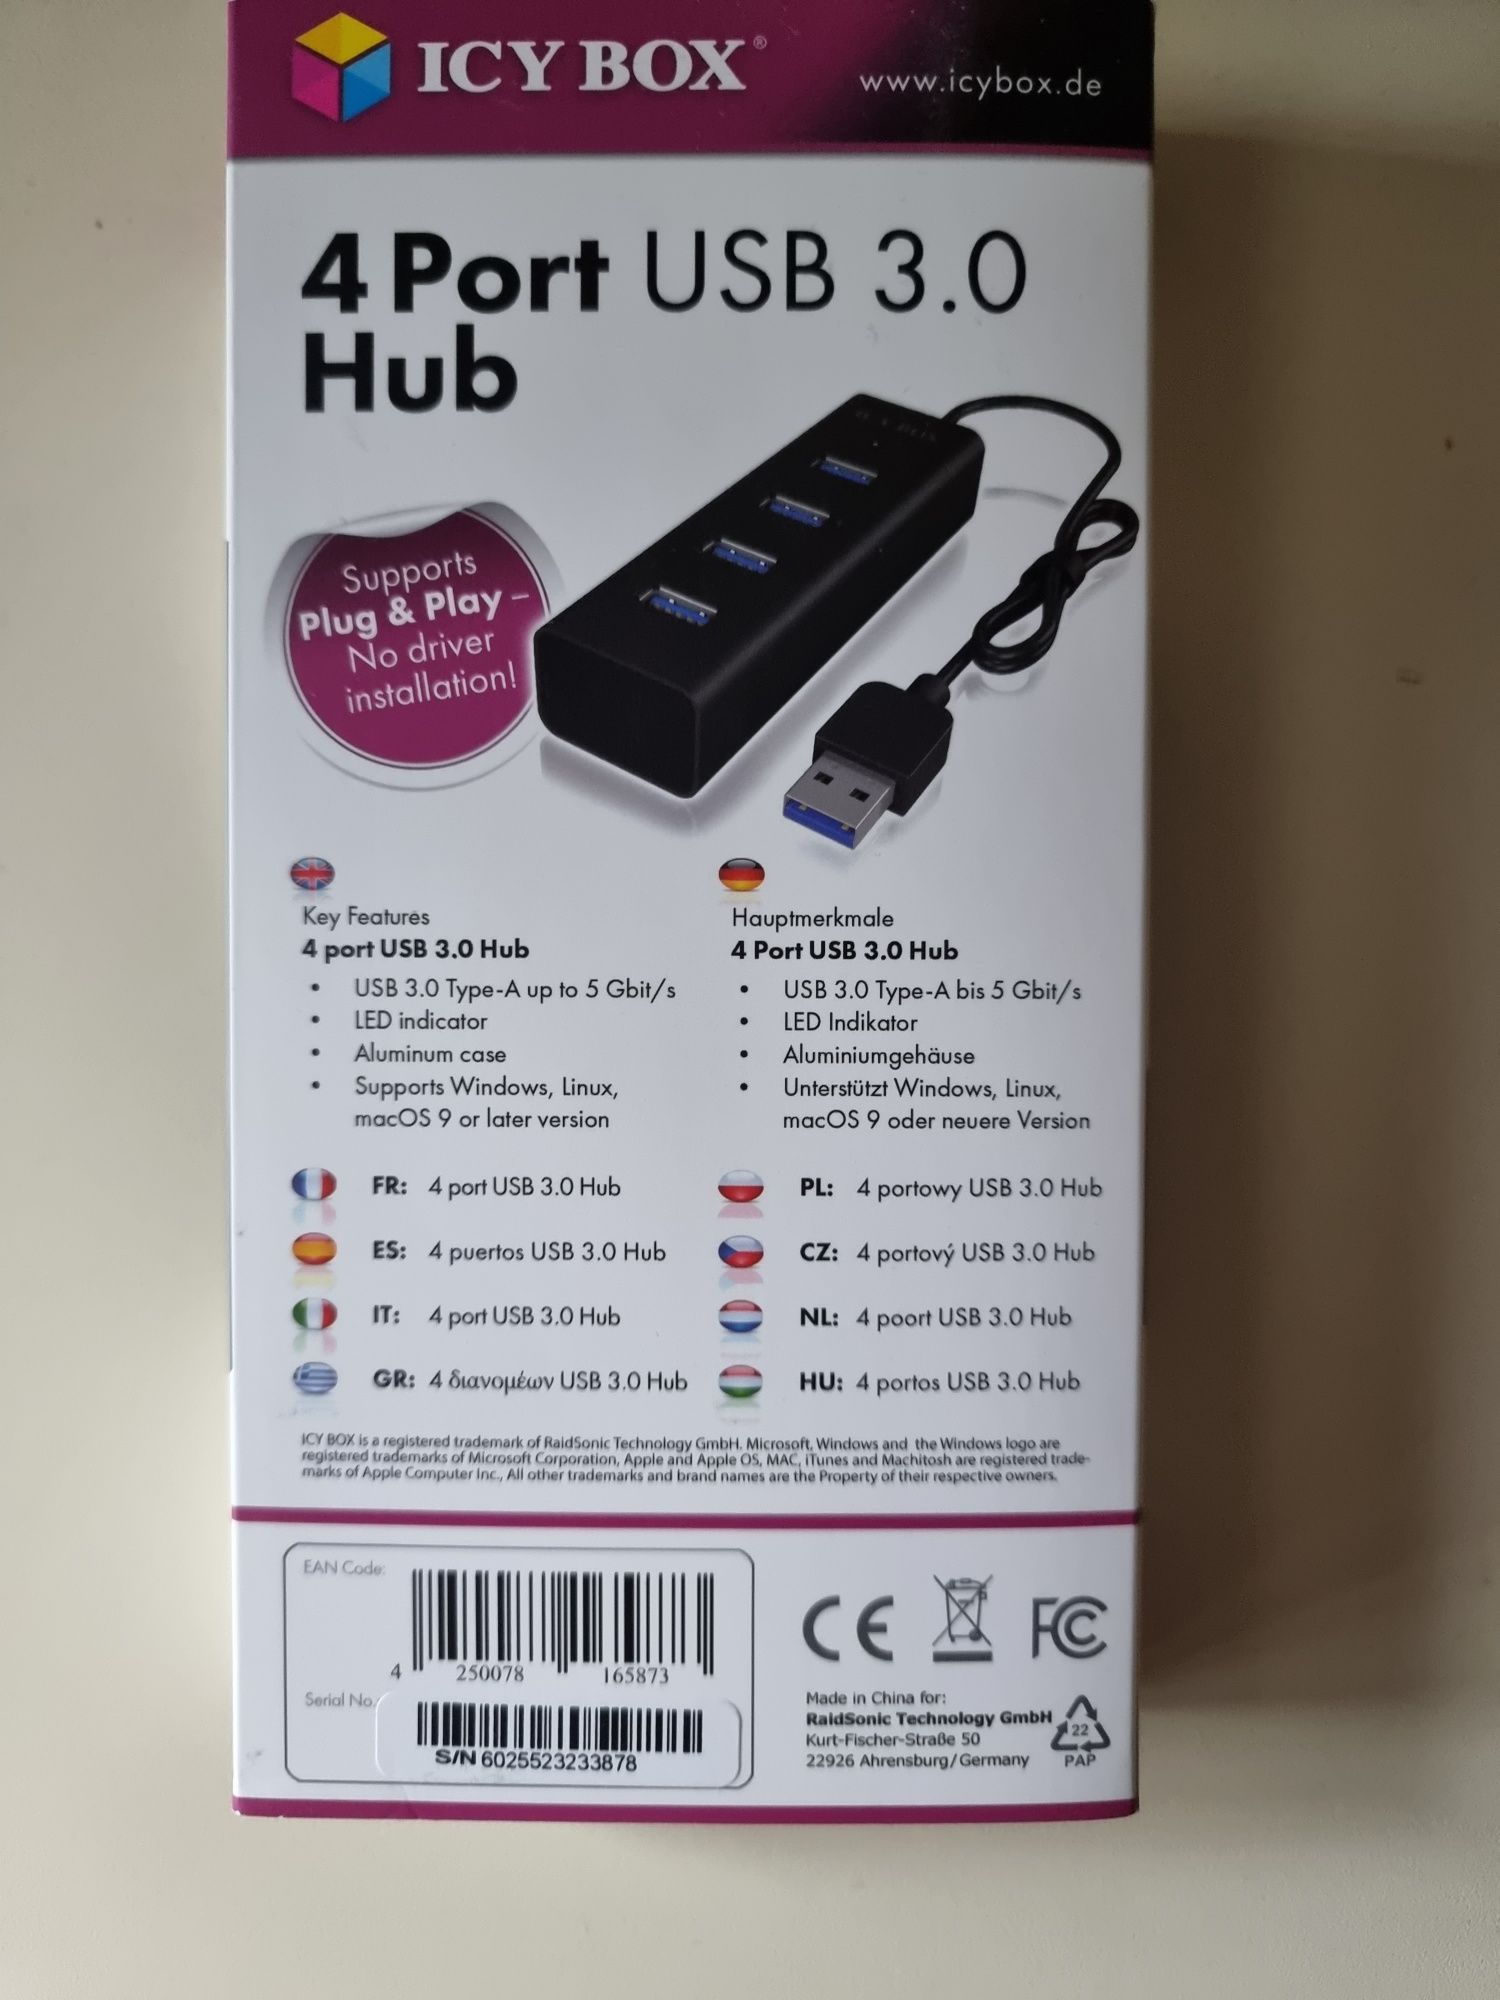 Hub USB 3.0 Icy Box